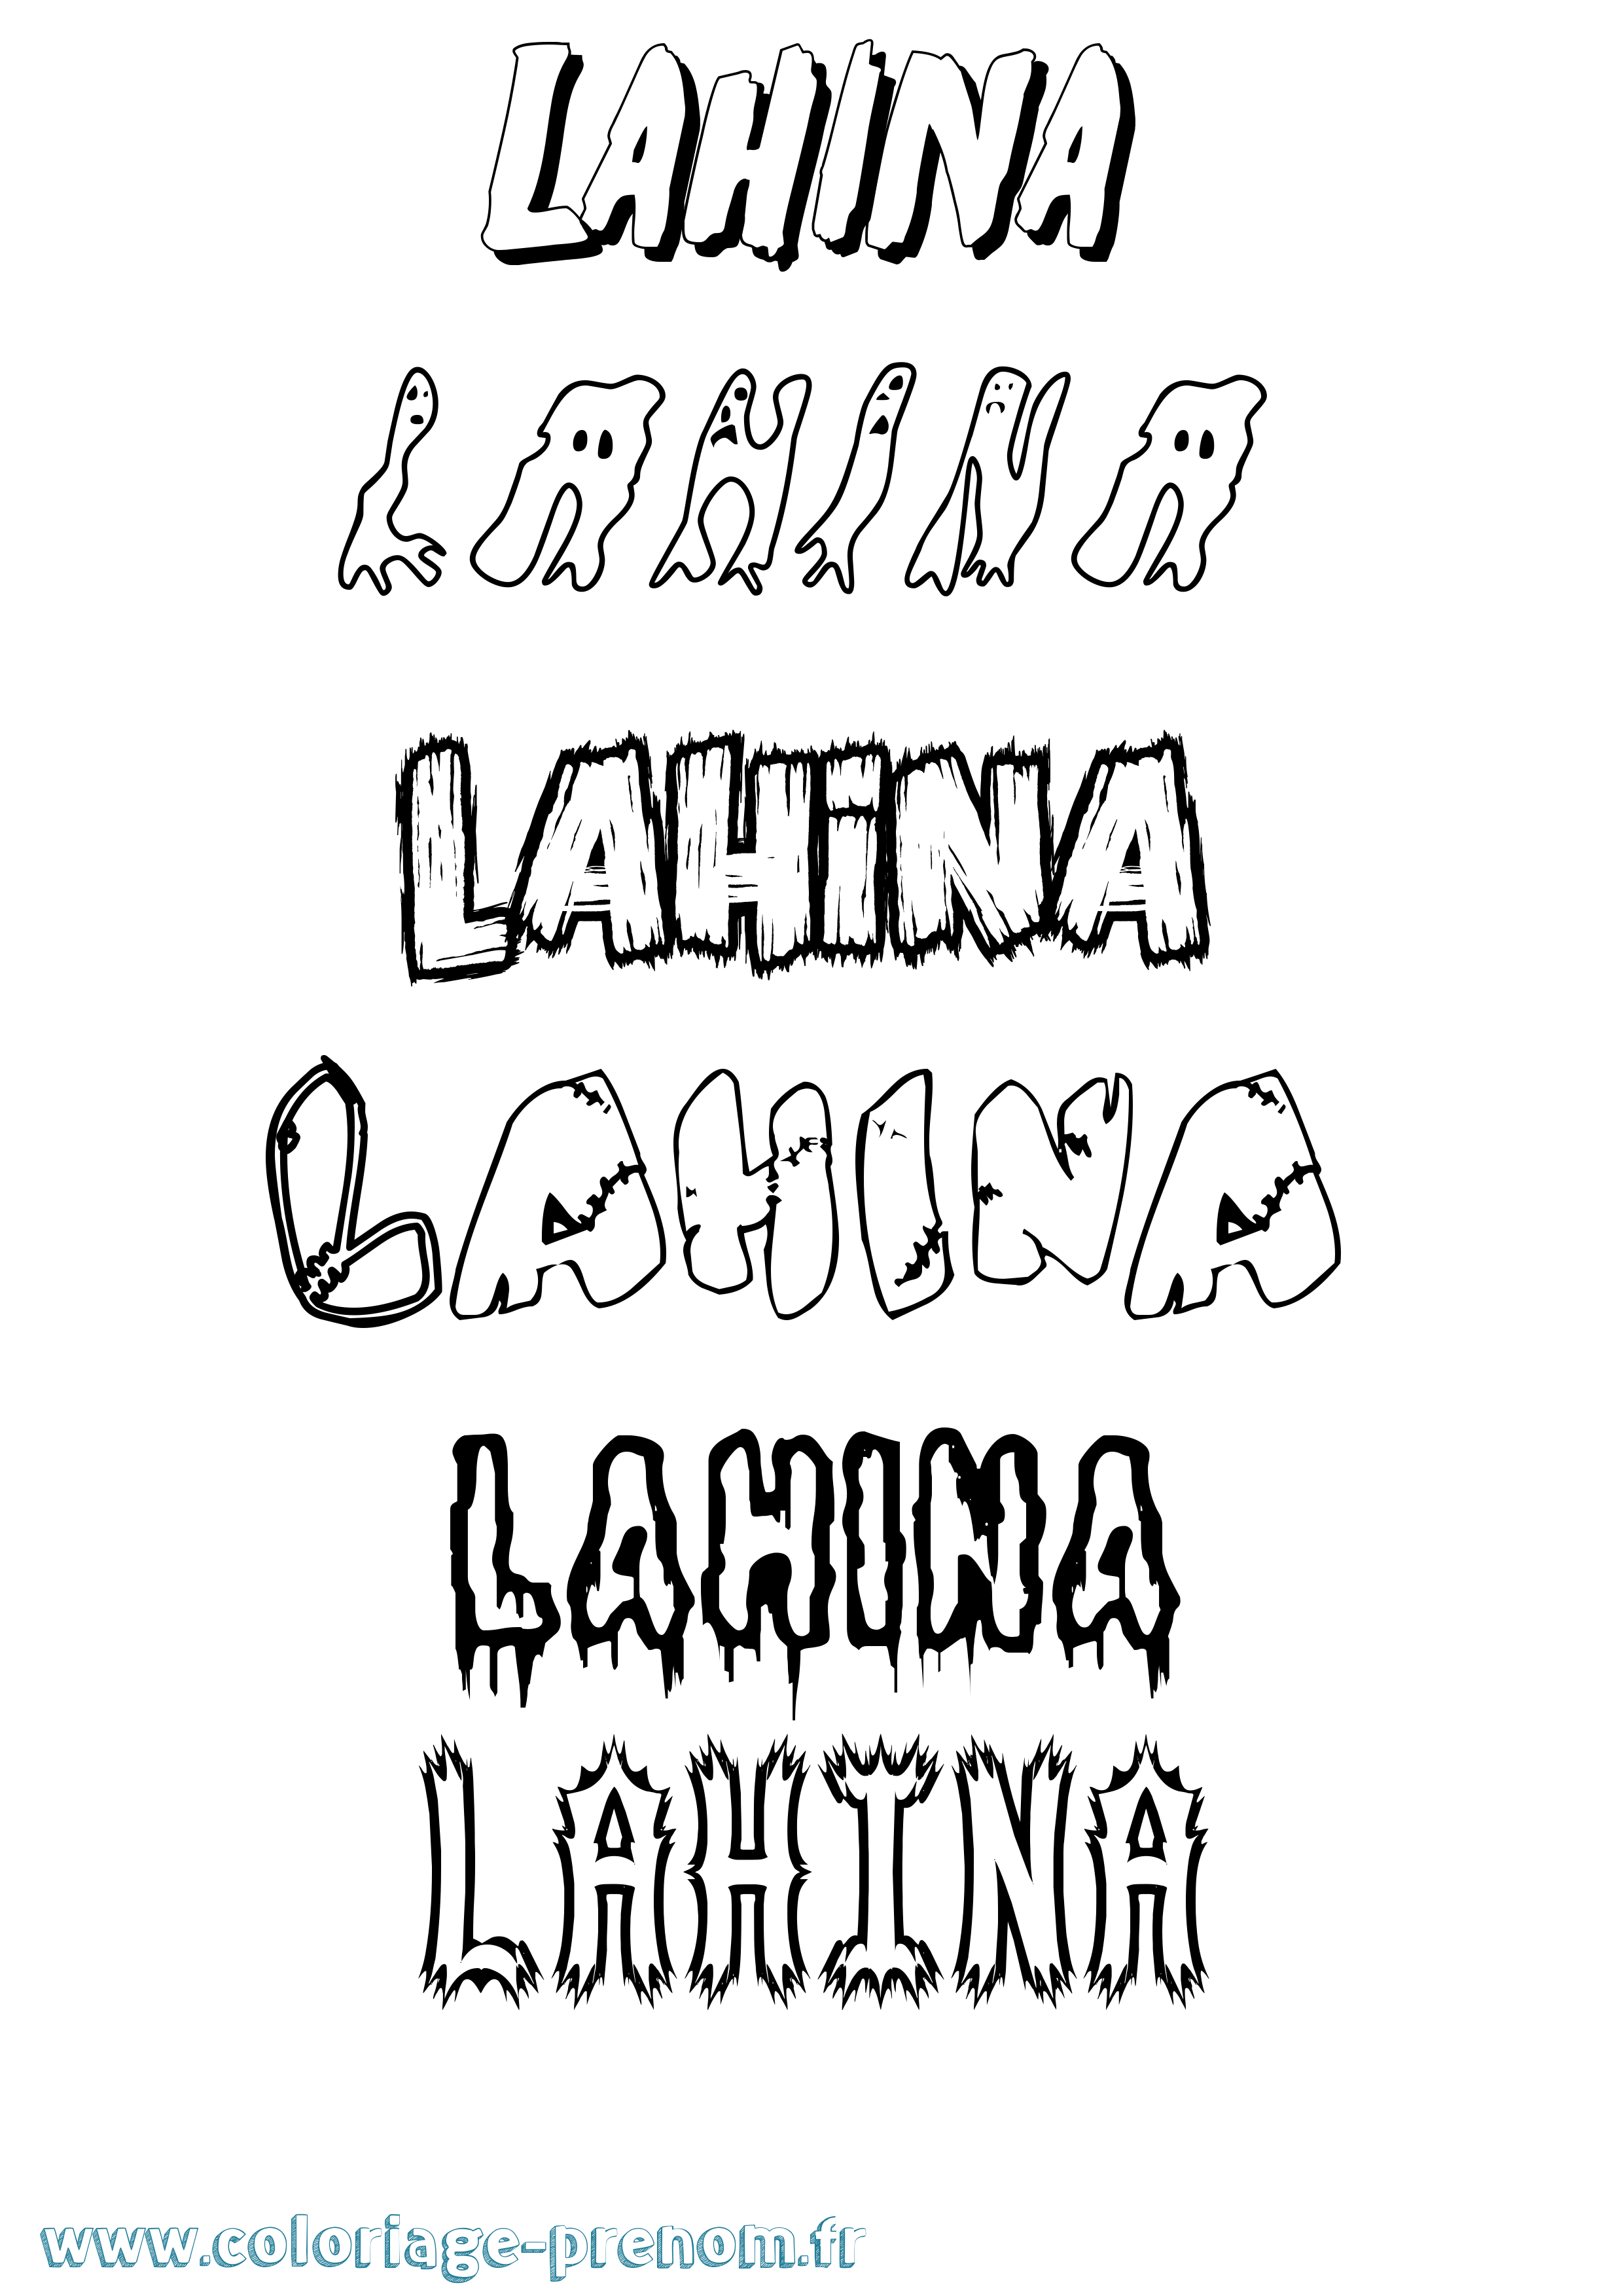 Coloriage prénom Lahina Frisson